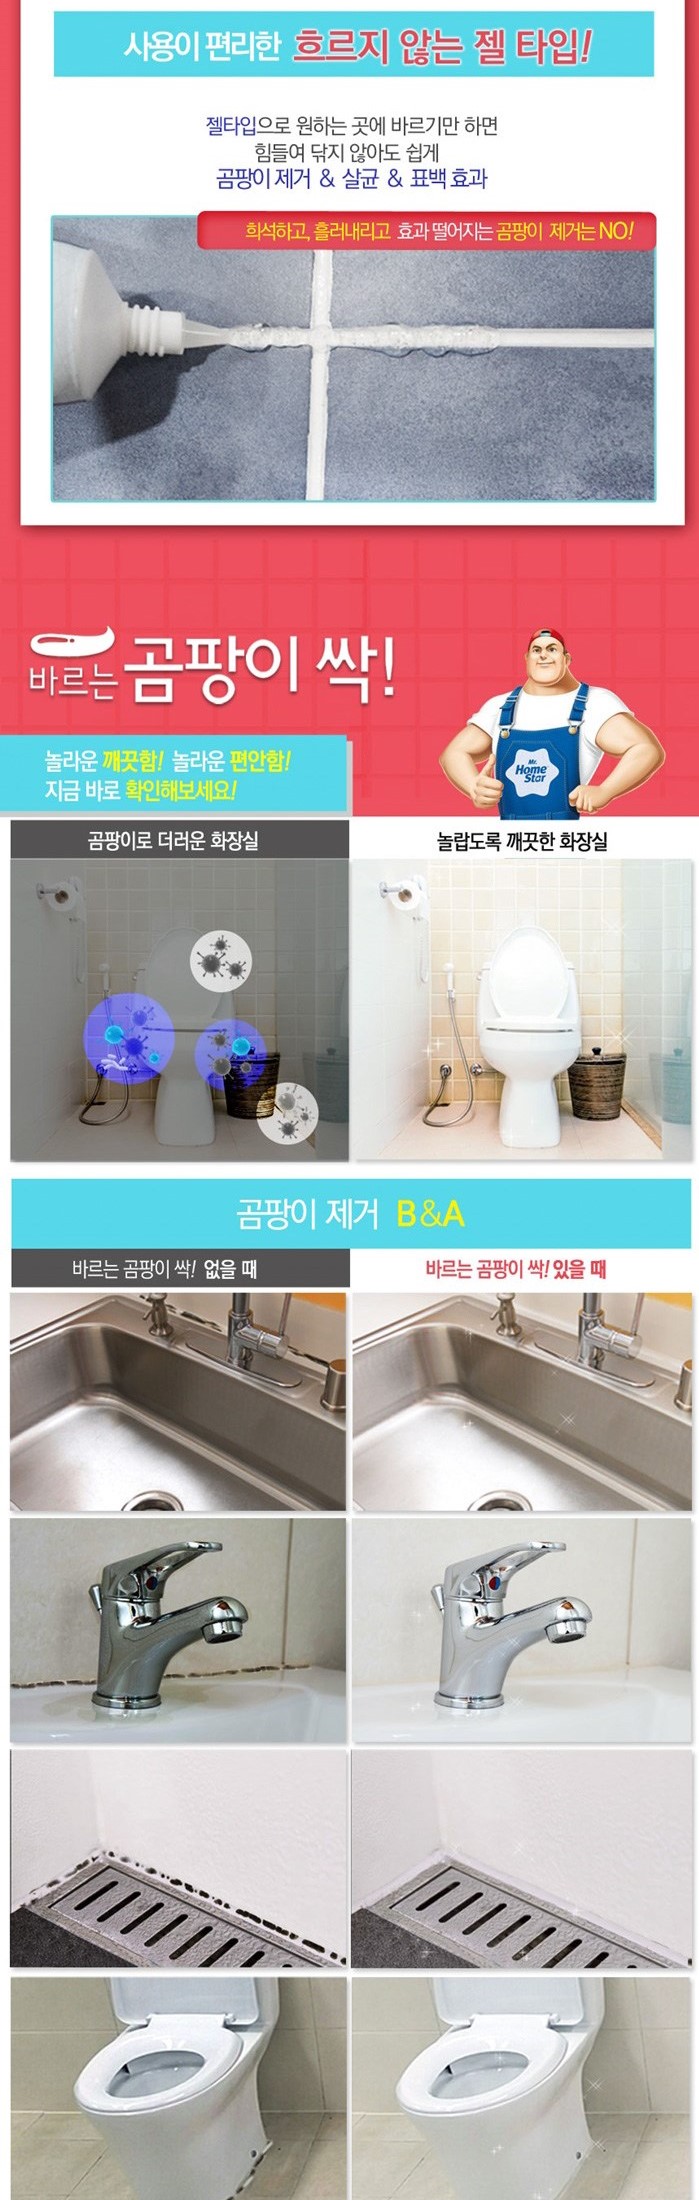 韓國食品-[Homestar] 霉菌去除劑 120ml